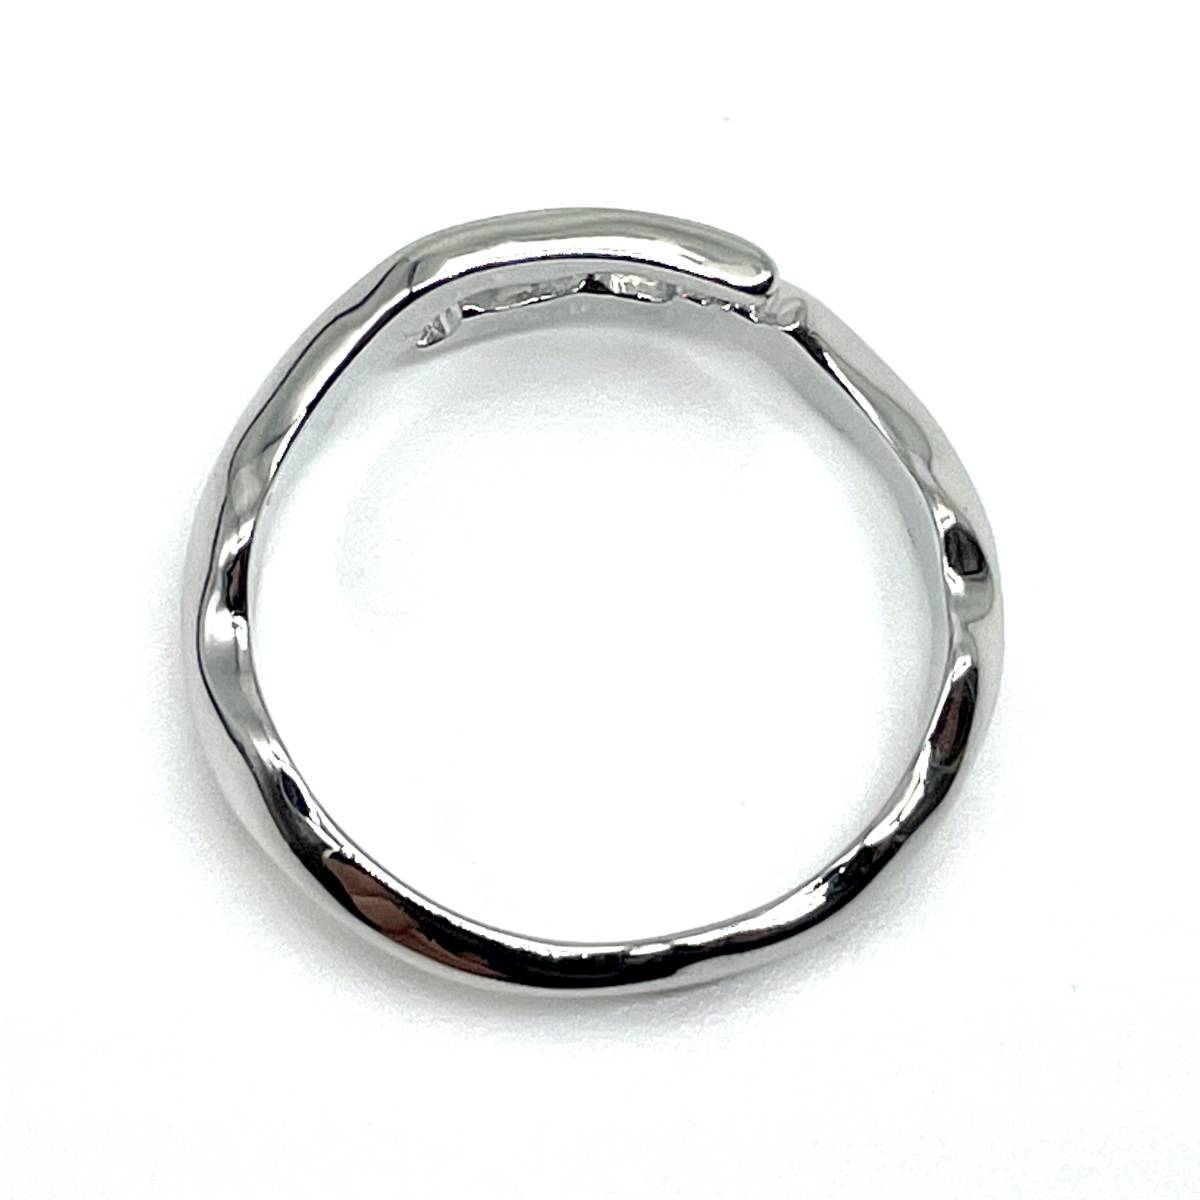 《 送料無料 》 リング メンズ 指輪 17号 シルバー 新品 未使用 アイビー オープンリング メンズリング ストリート カジュアル 【PN3331】